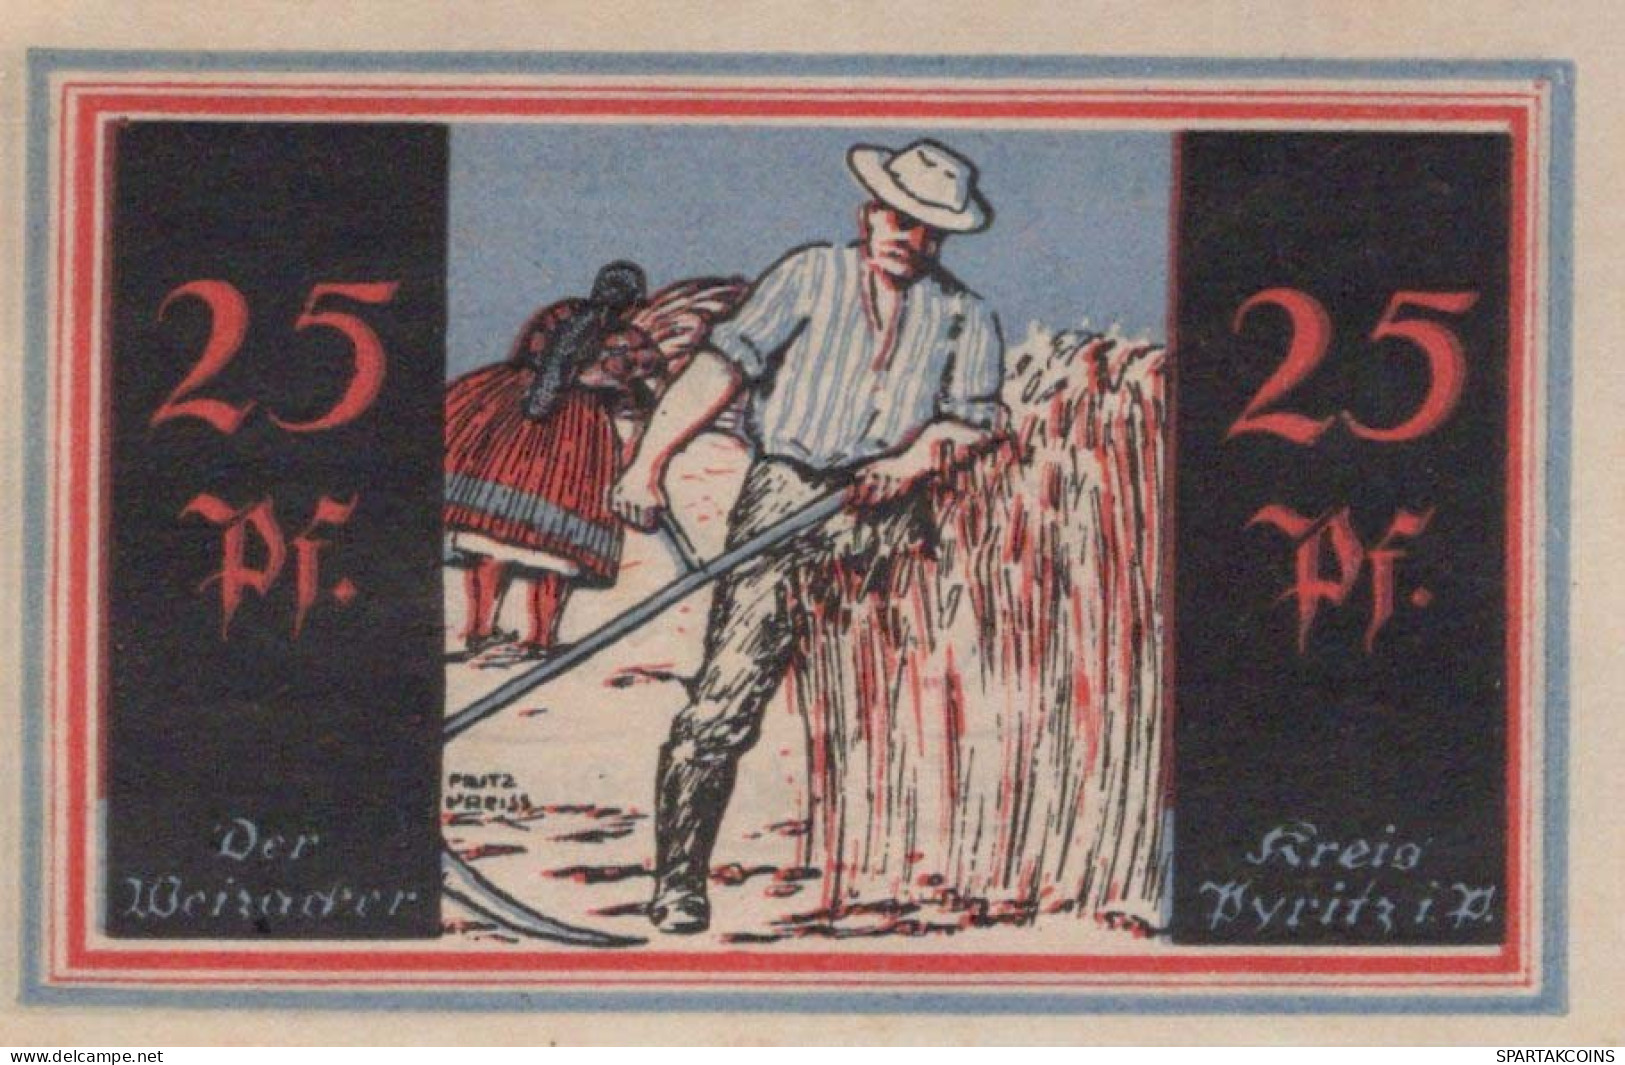 25 PFENNIG 1921 Stadt PYRITZ Pomerania UNC DEUTSCHLAND Notgeld Banknote #PB789 - Lokale Ausgaben